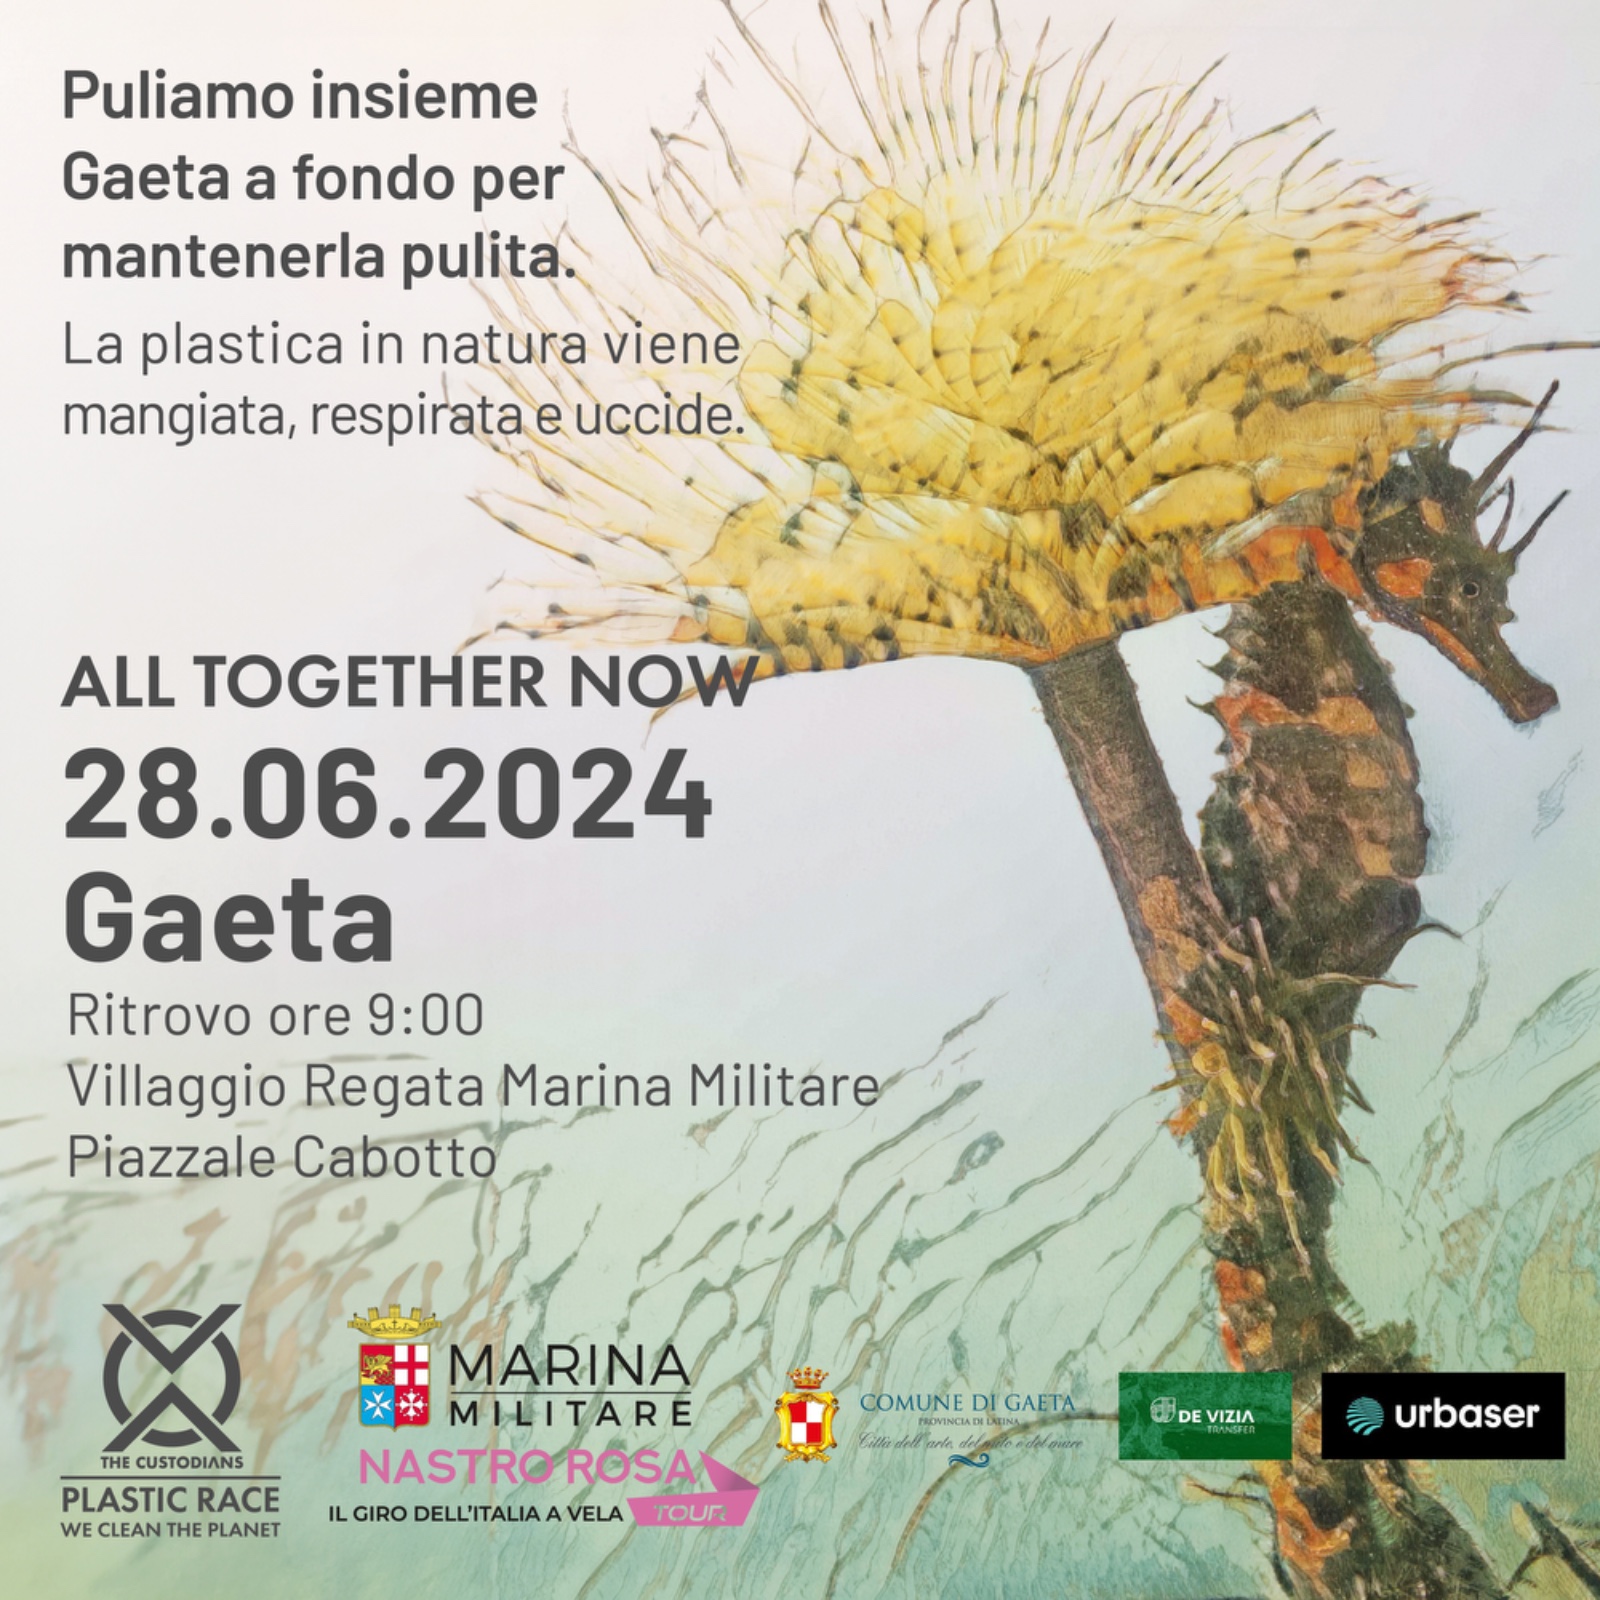 The Custodians Plastic Race, format di pulizia sistematica di tutto il territorio, urbano e naturale, farà tappa a Gaeta il  28 giugno 2024 come pa...